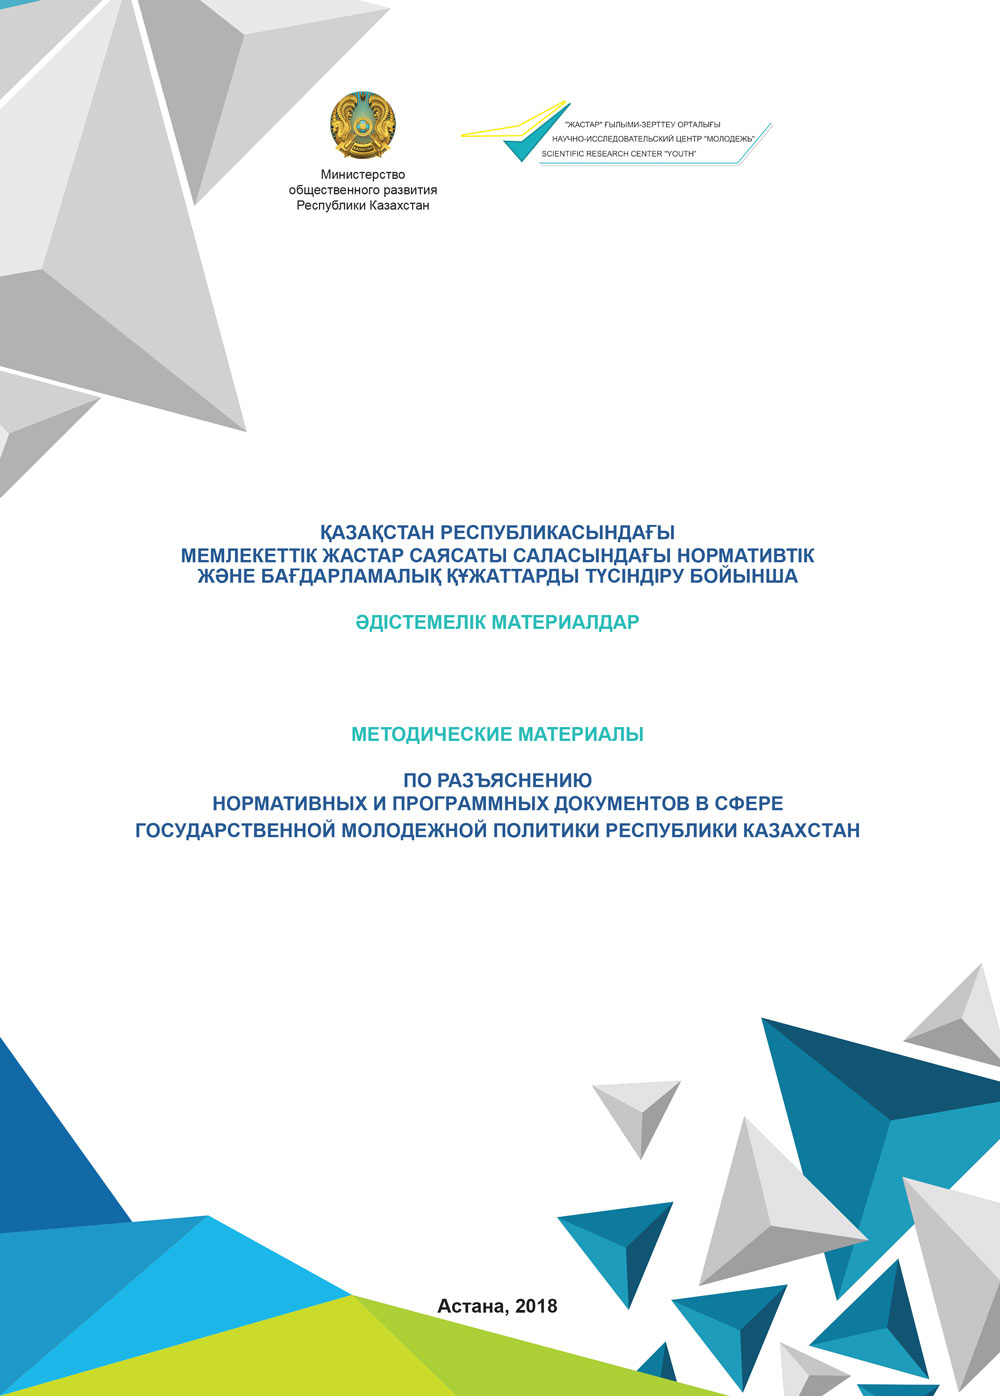 Сборник «Методические материалы по разъяснению нормативных и программных документов в сфере государственной молодежной политики Республики Казахстан», 2018